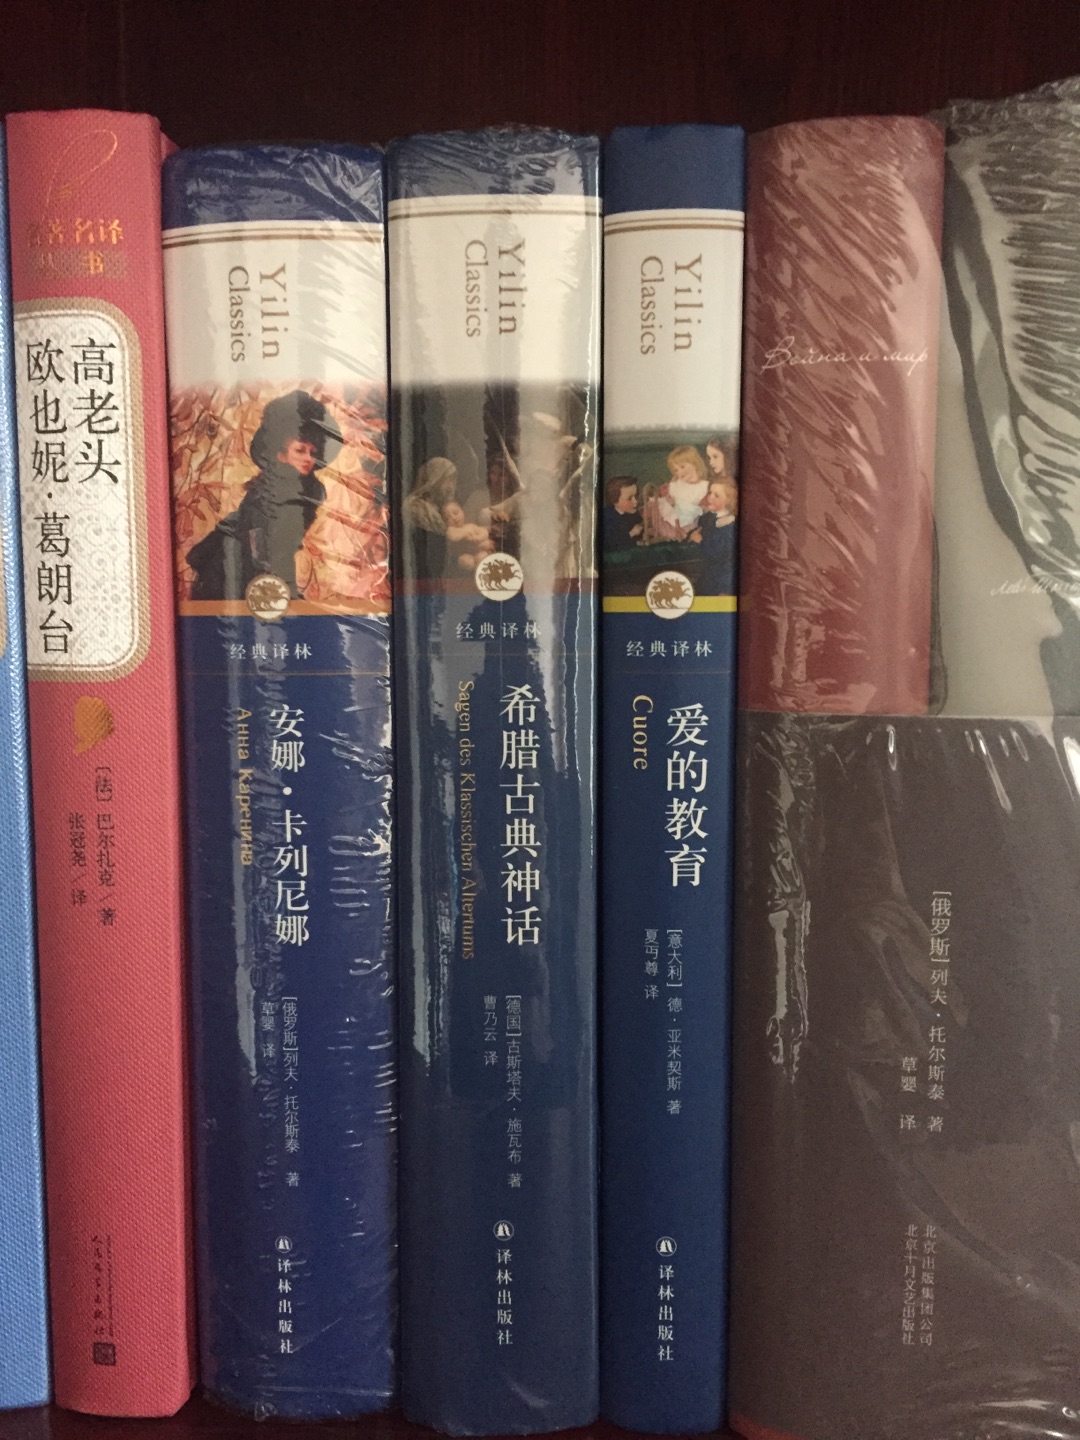 译林出版社出品的很多都是精品，特别是翻译很到位，非常喜欢这个版本。